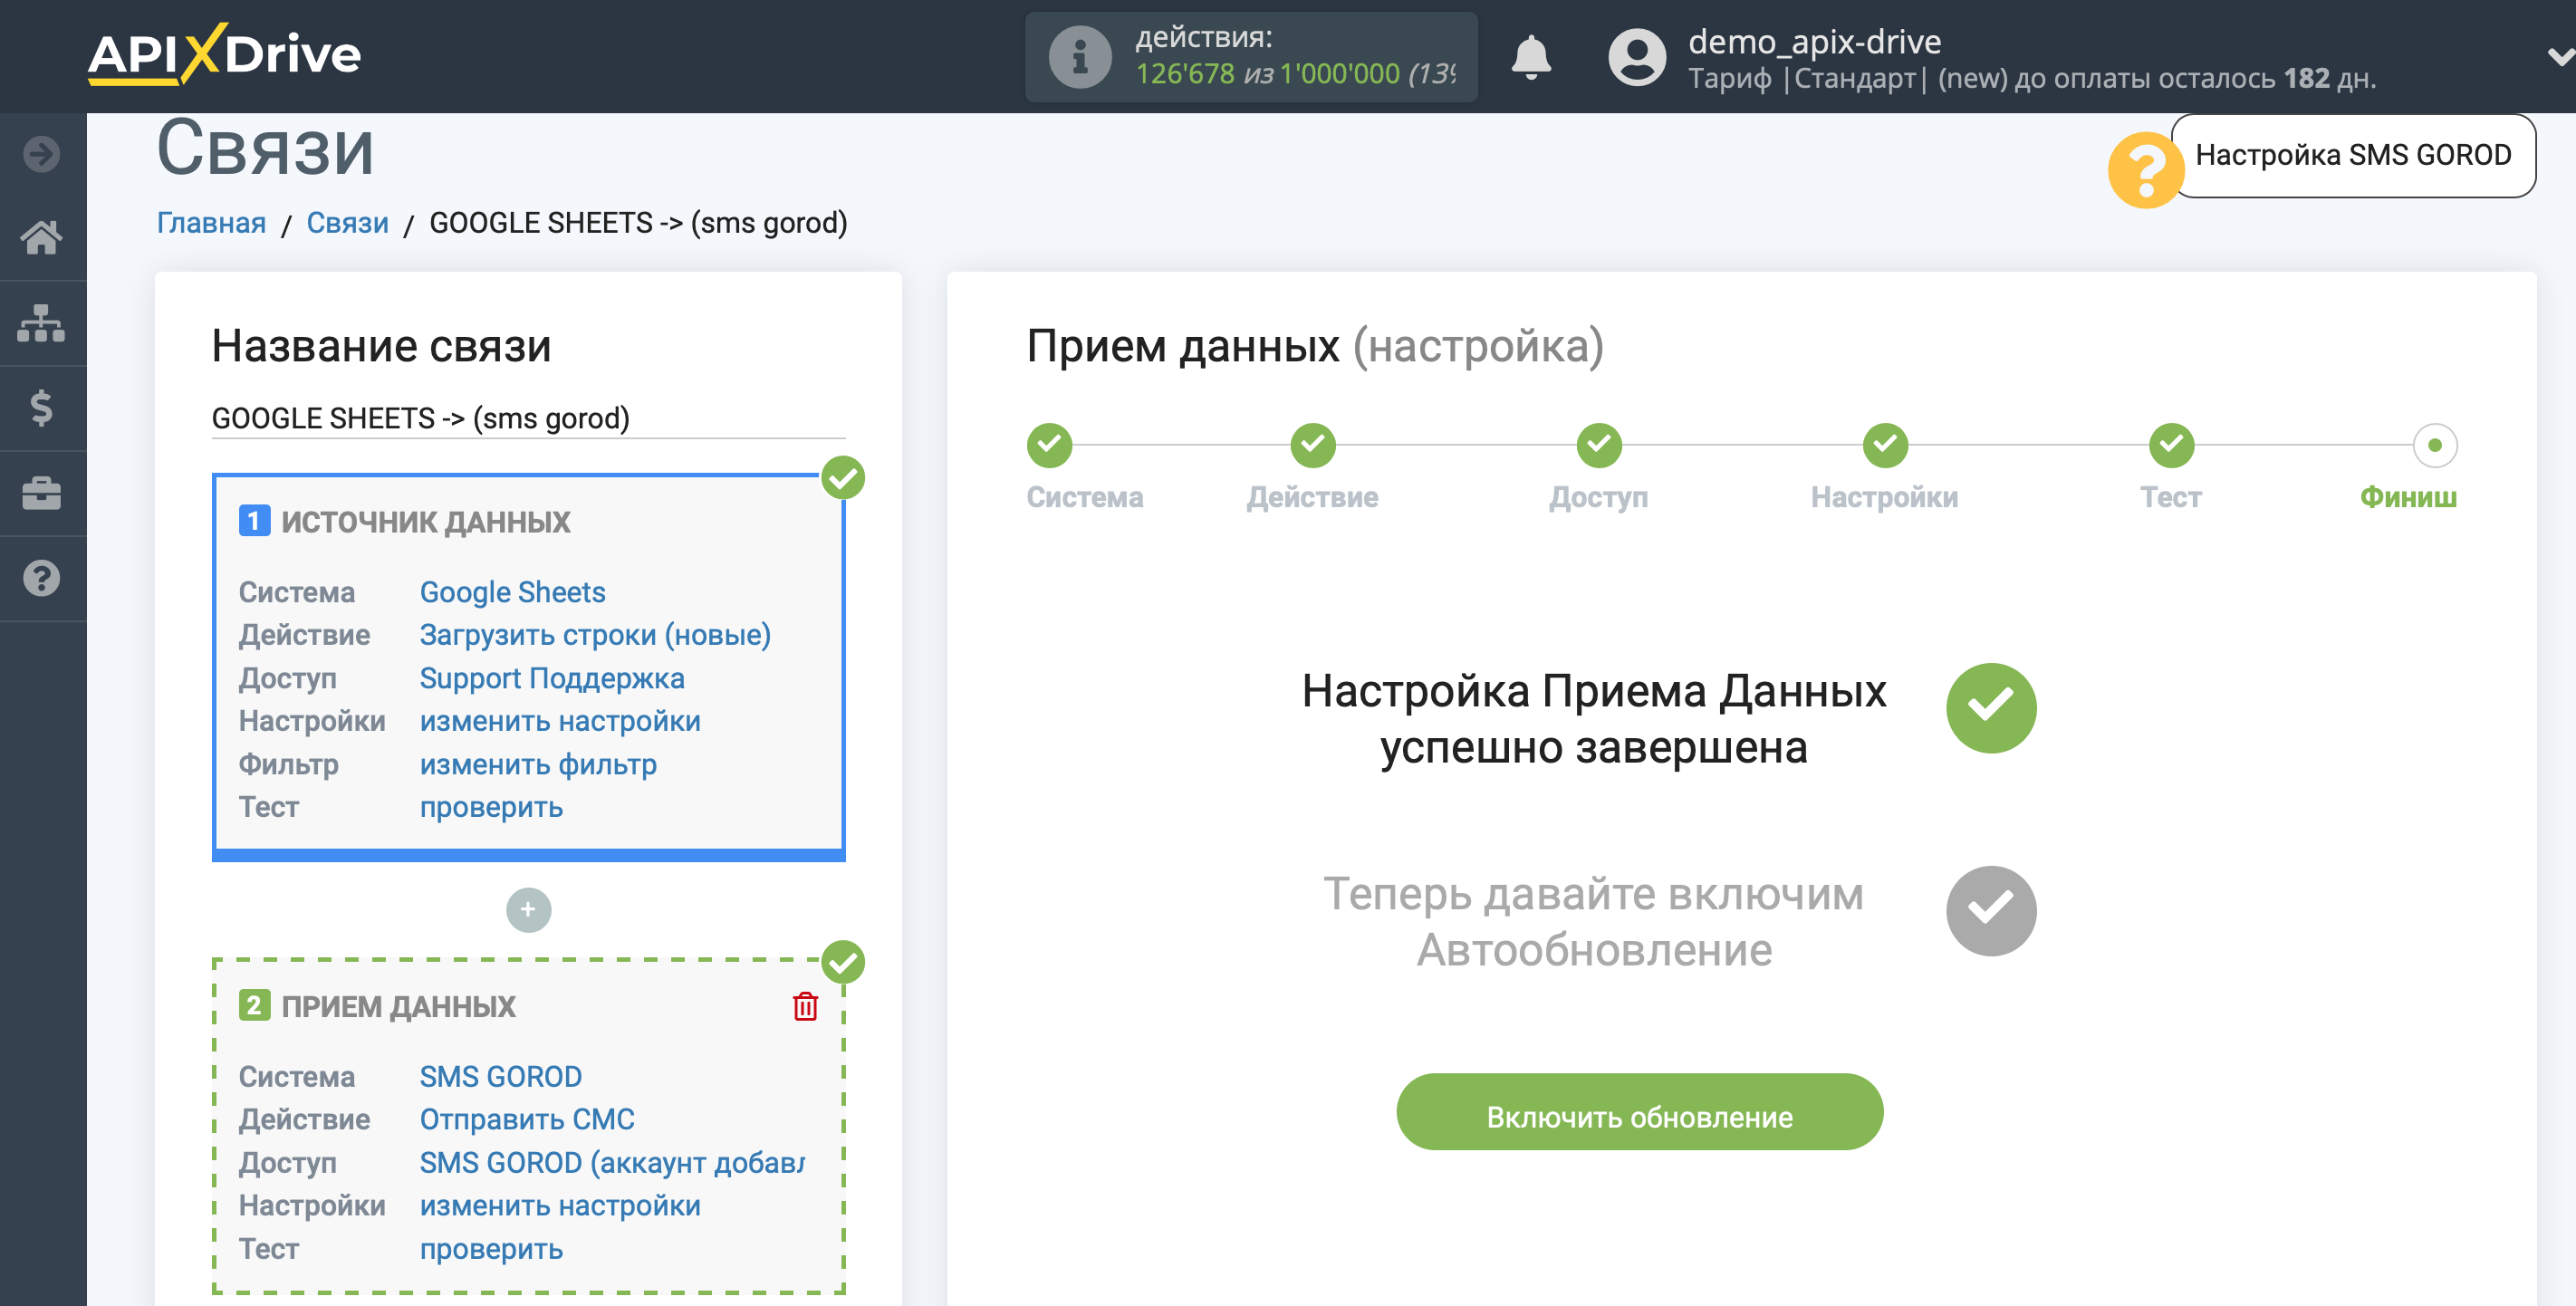 Настройка Приема данных в SMS Gorod | Включение автообновления